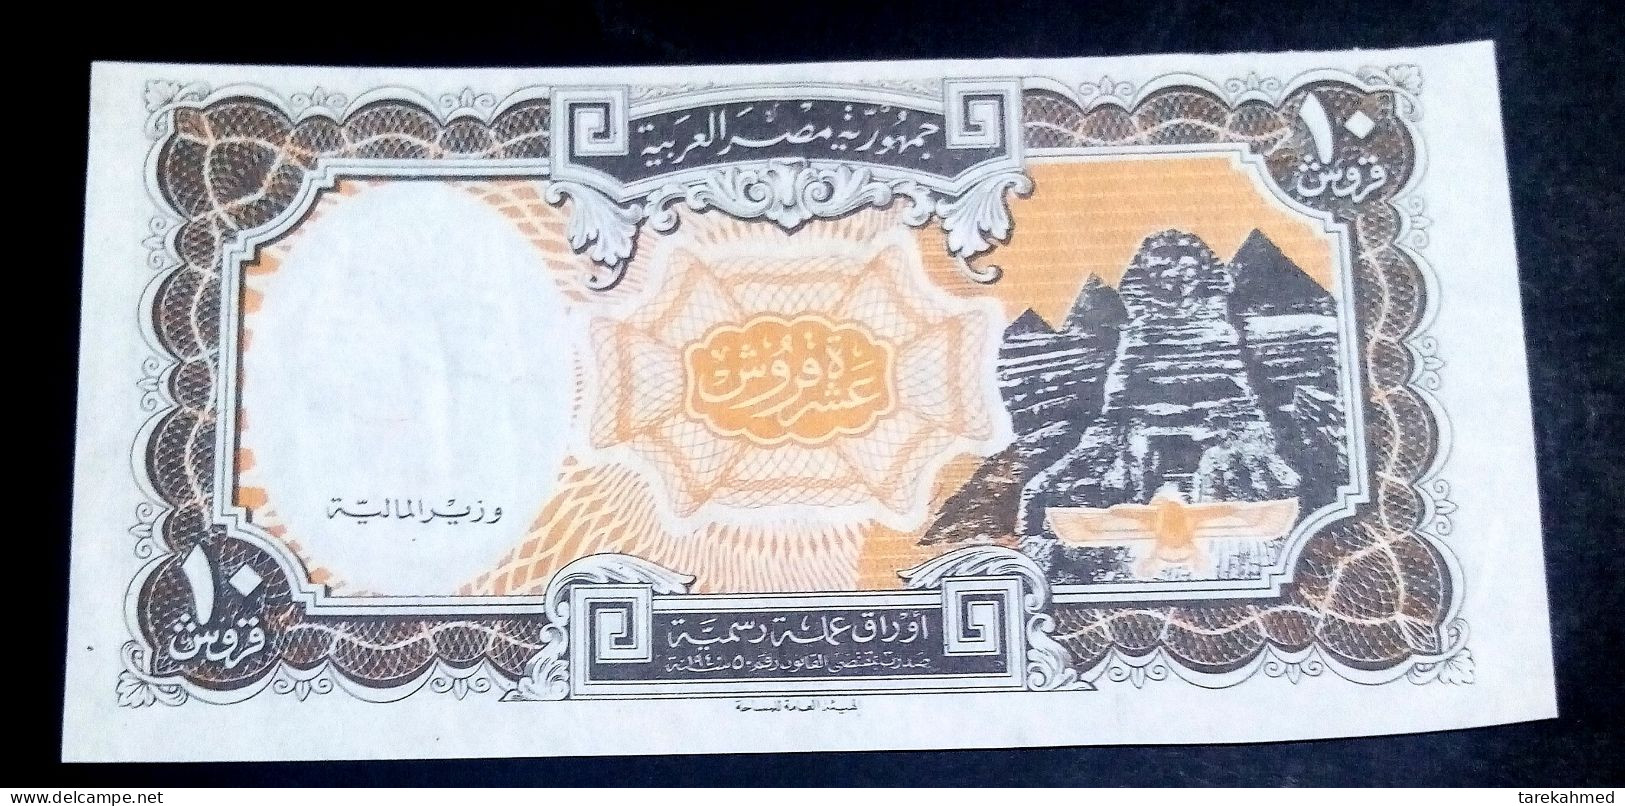 Egypt 1997, Rare Error 10 Piastres - No Arabic Signature No Serial Number  - UNC - Egitto